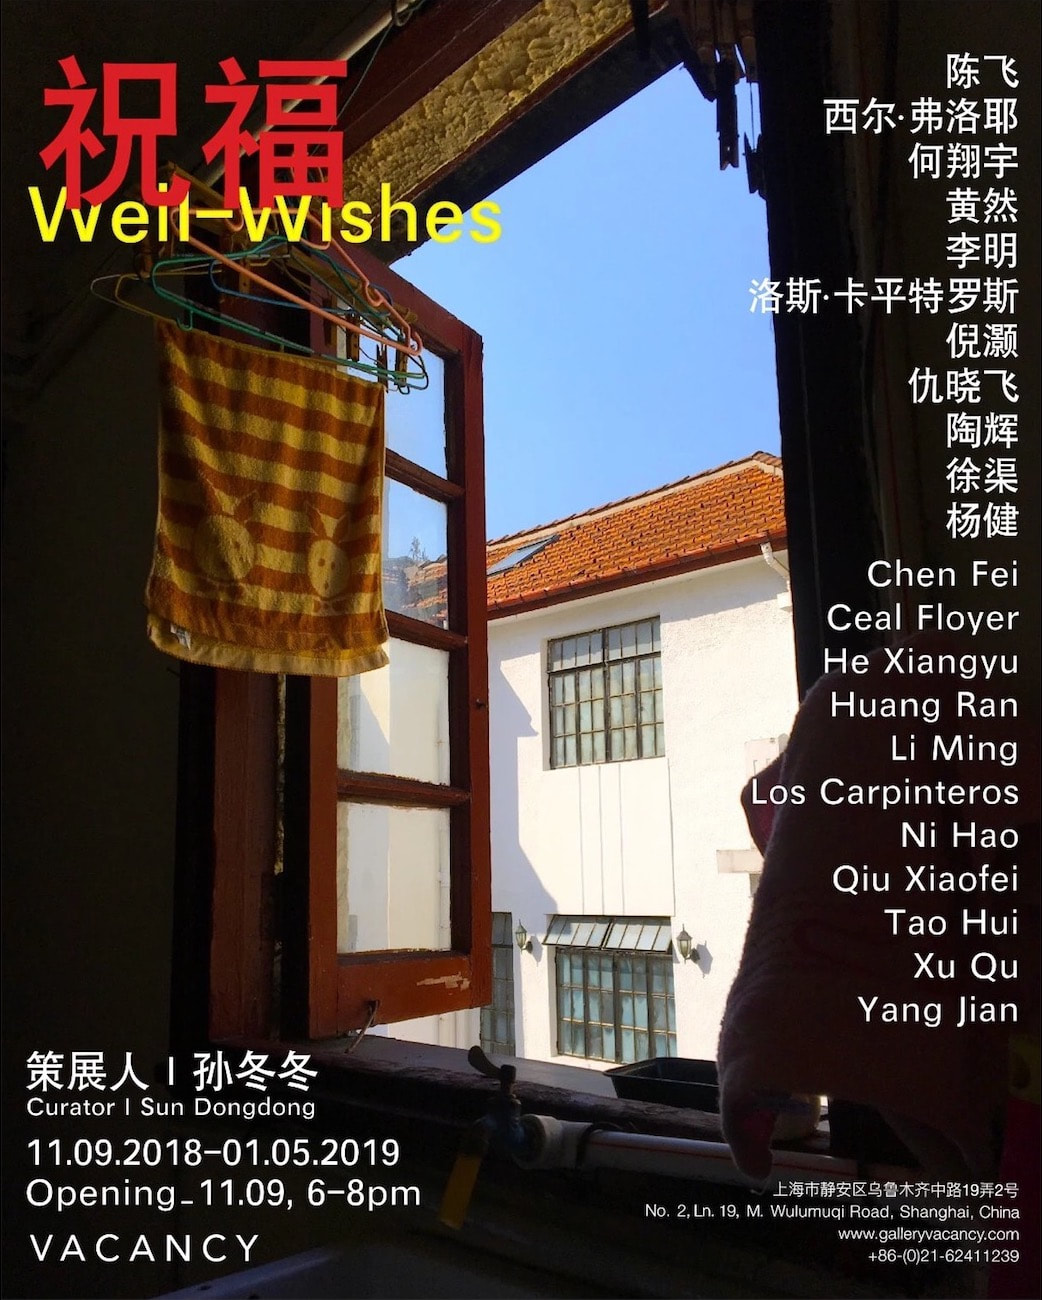 Gallery Vacancy exhibition, November 2018, Tao Hui